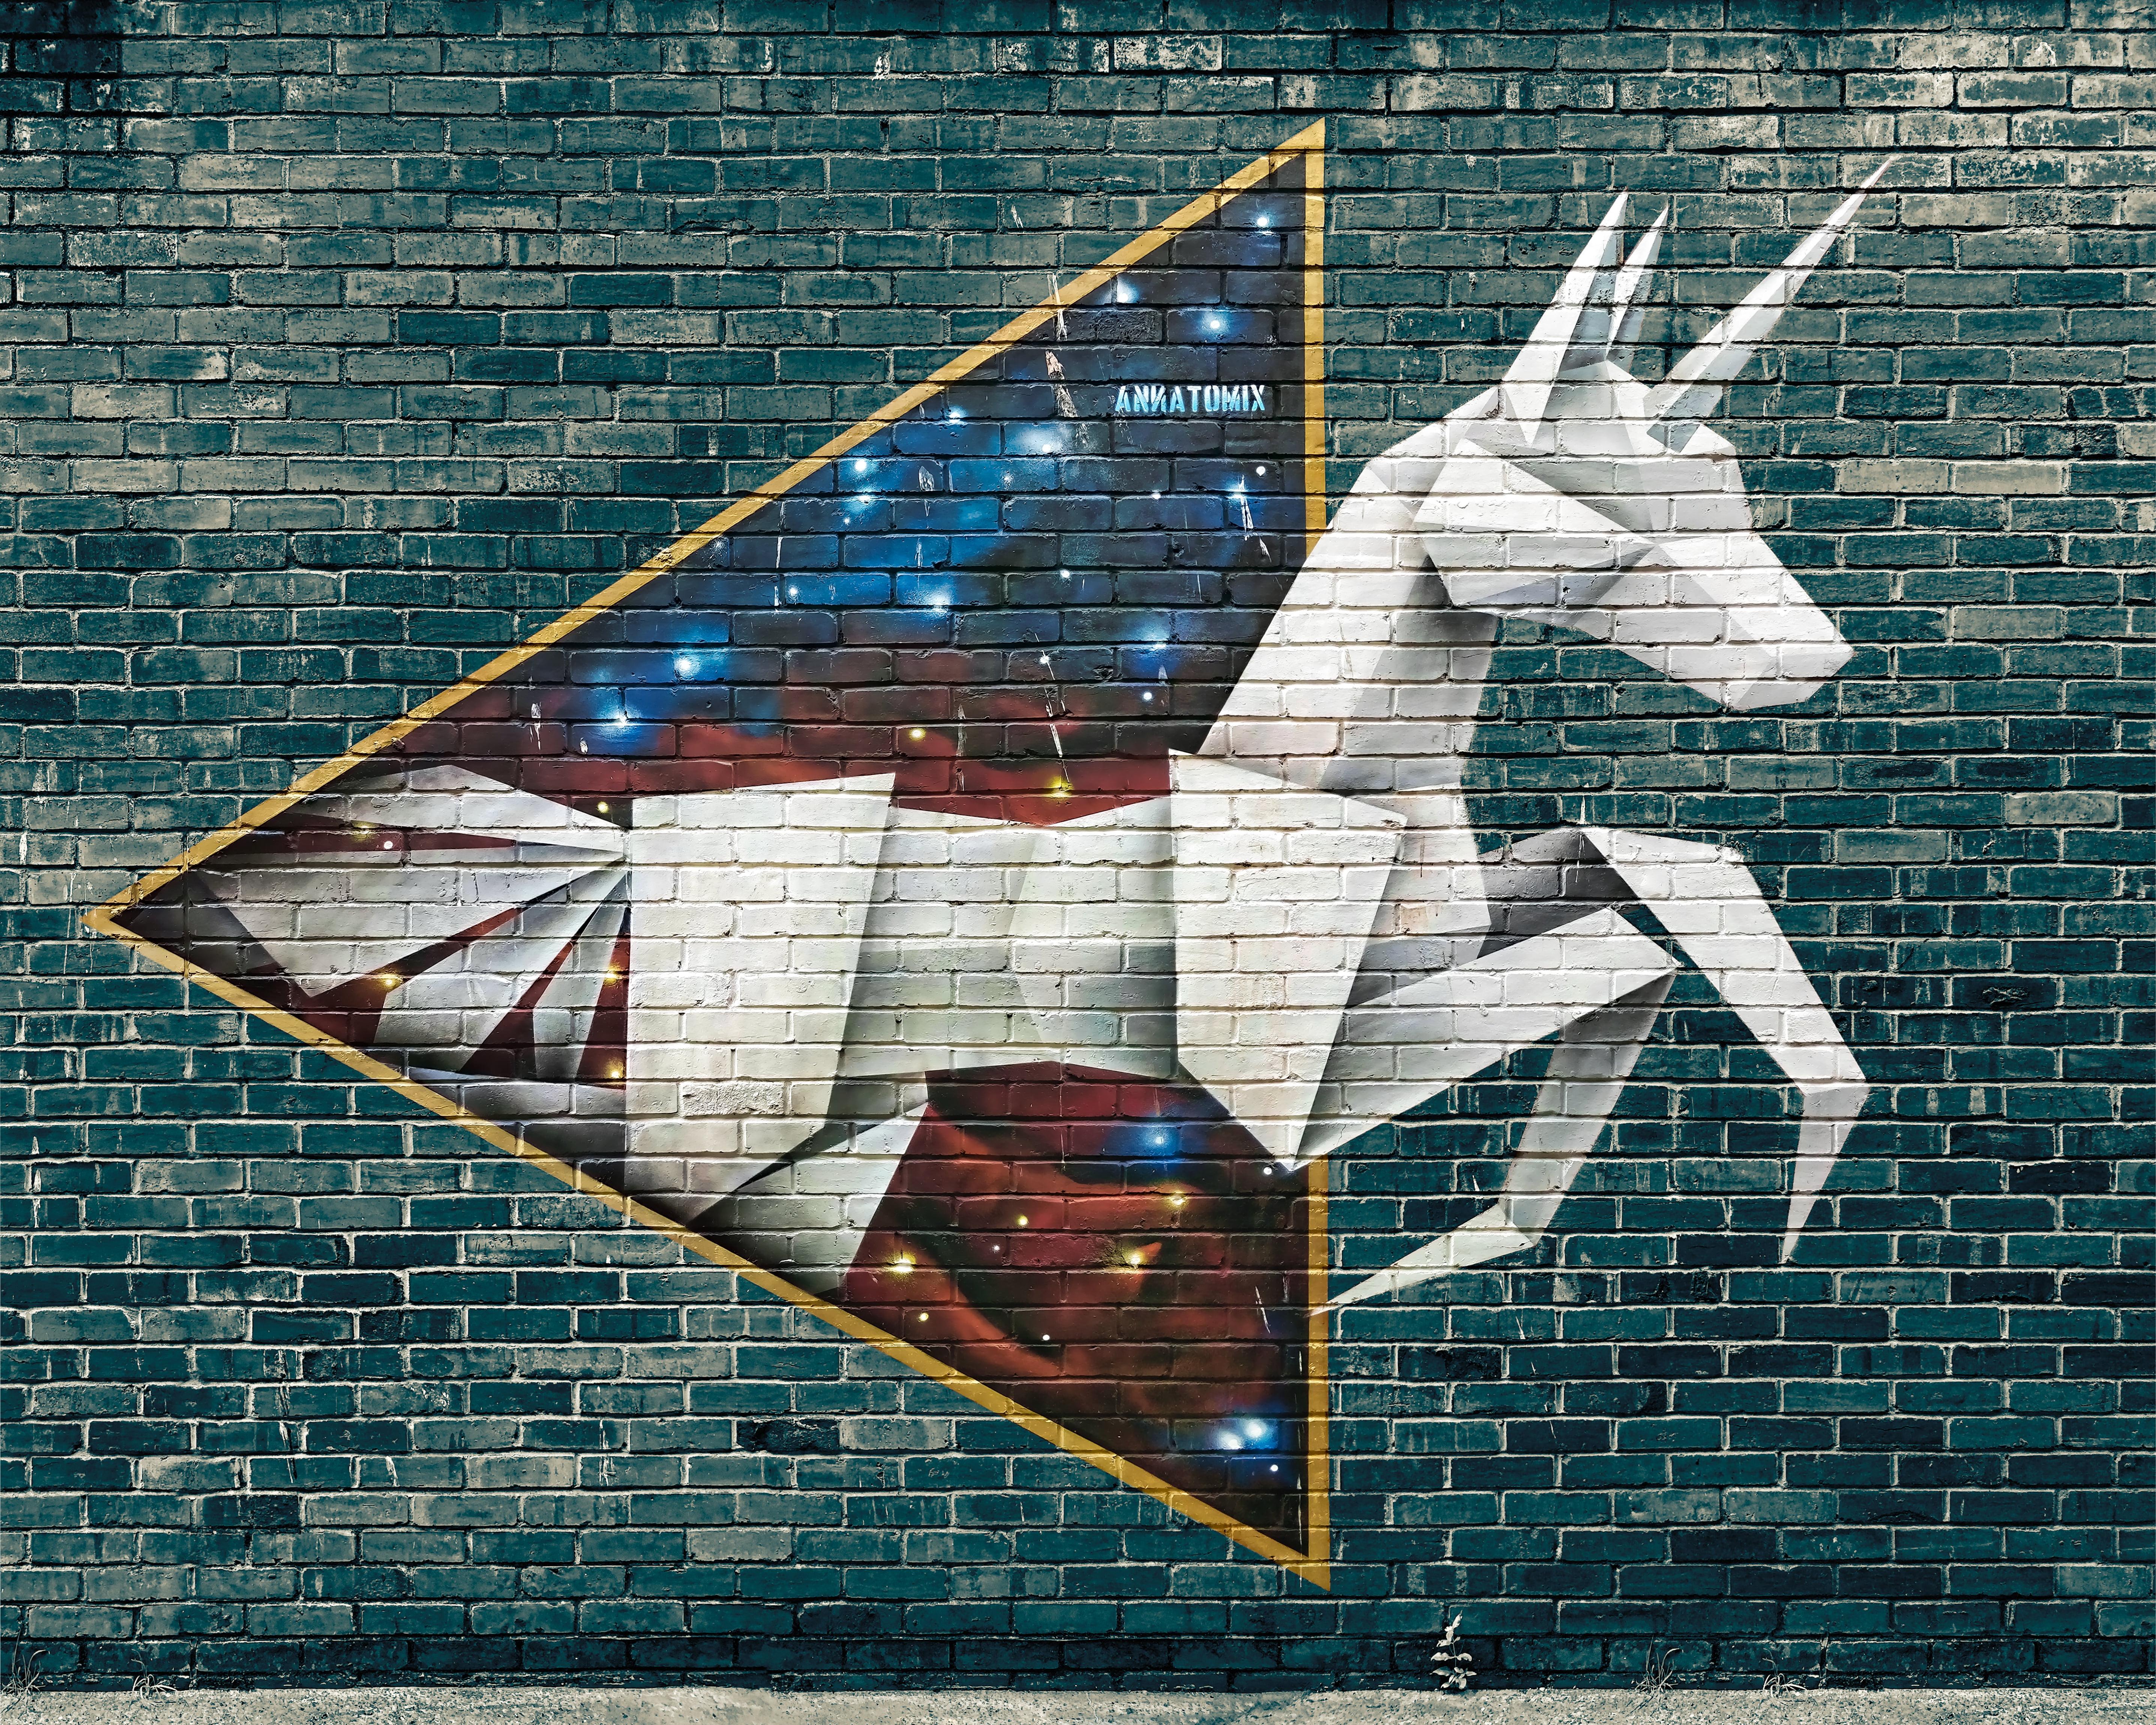 white unicorn graffiti, origami, street art, brick wall, backgrounds